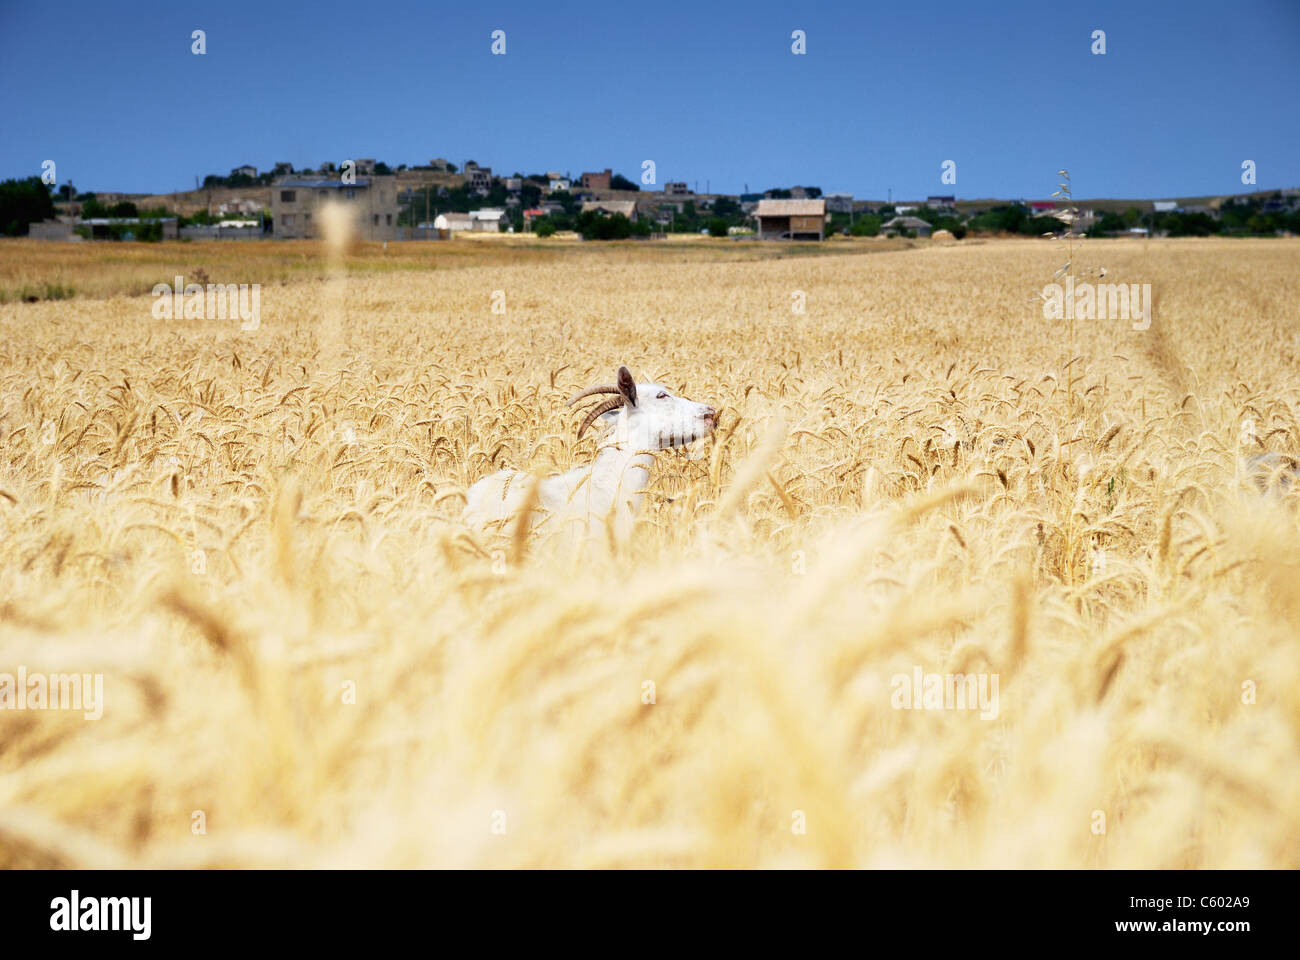 Ziege im Weizenfeld Stockfoto